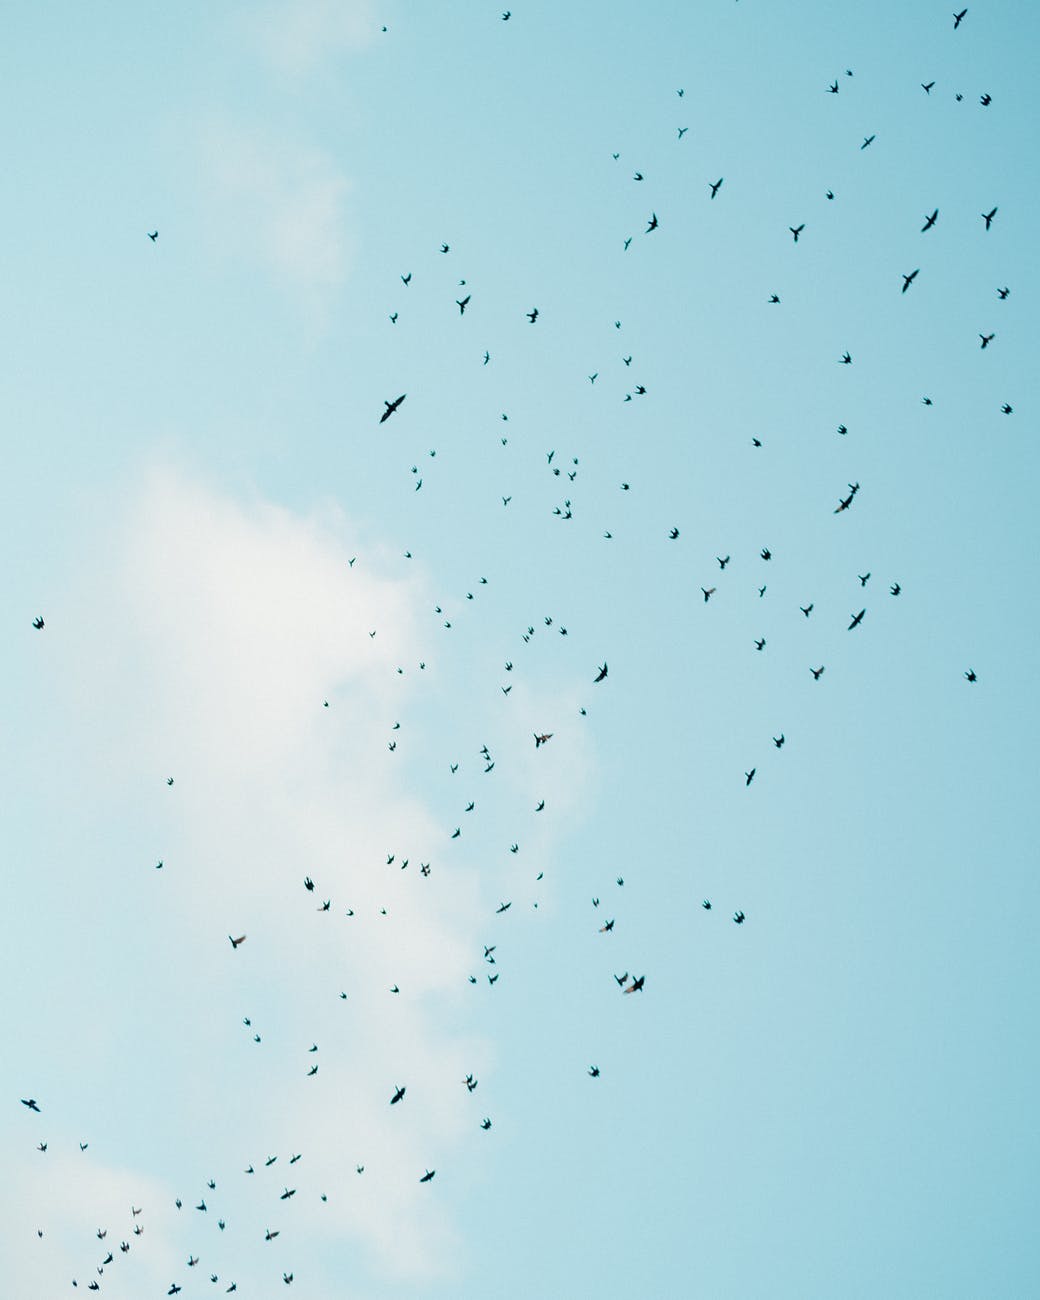 birds flying in blue sky in daylight